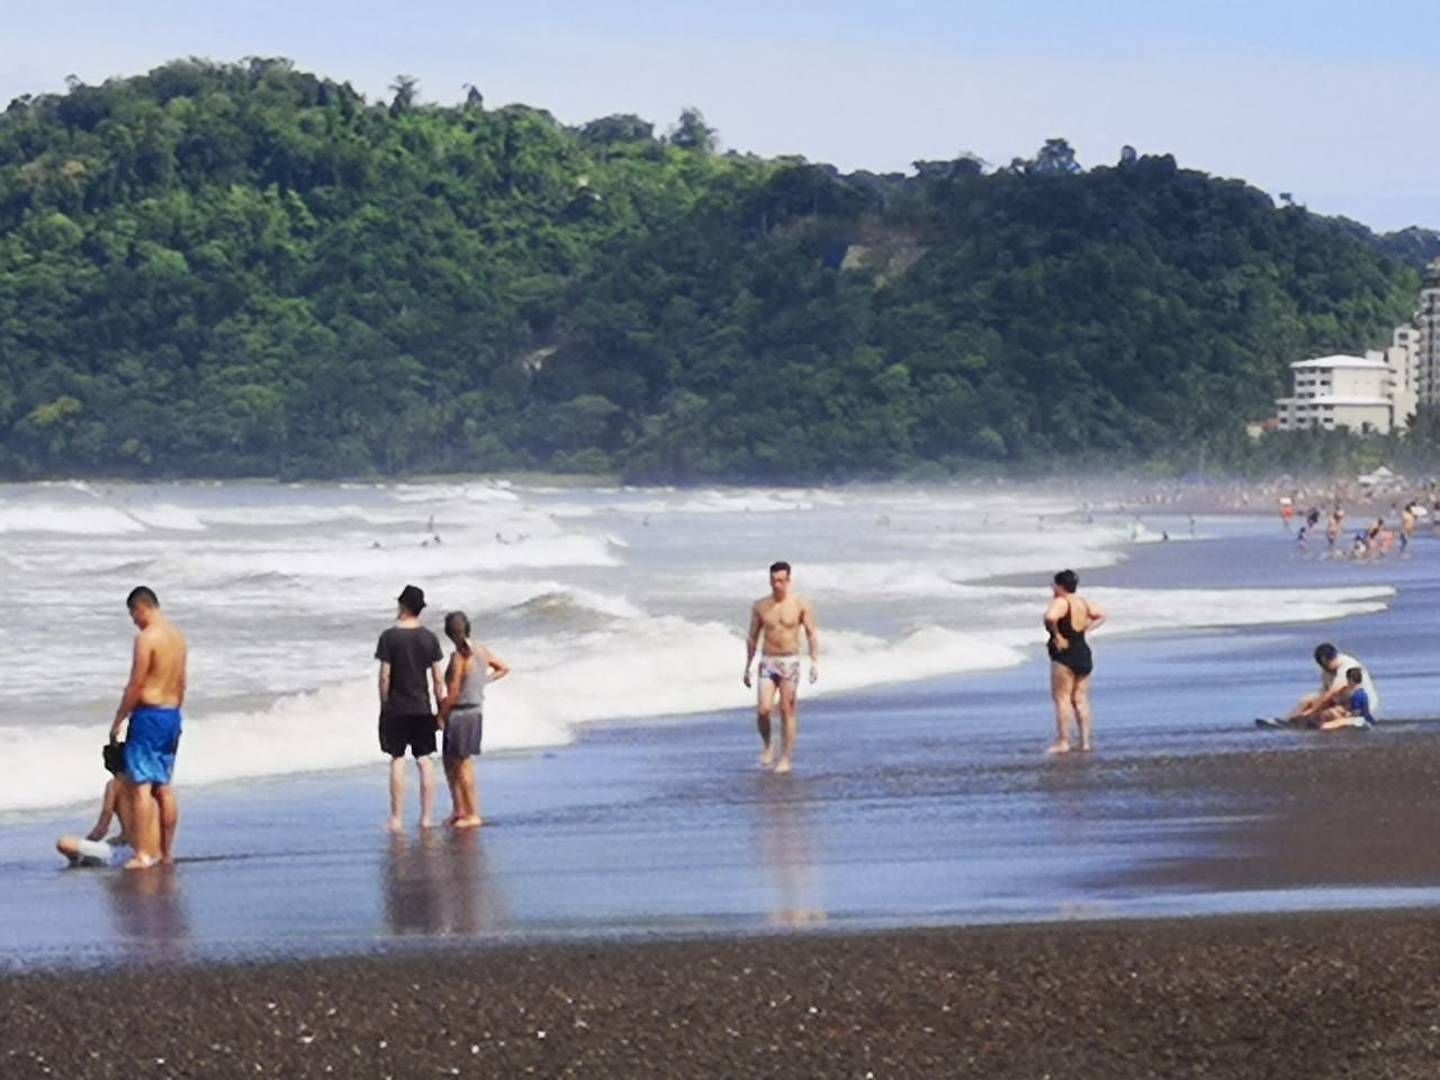 Turistas aprovechan el fin de semana largo del 25 de julio para visitar playa Jacó, en Garabito, Puntarenas. Foto: cortesía de Jorge Castillo.